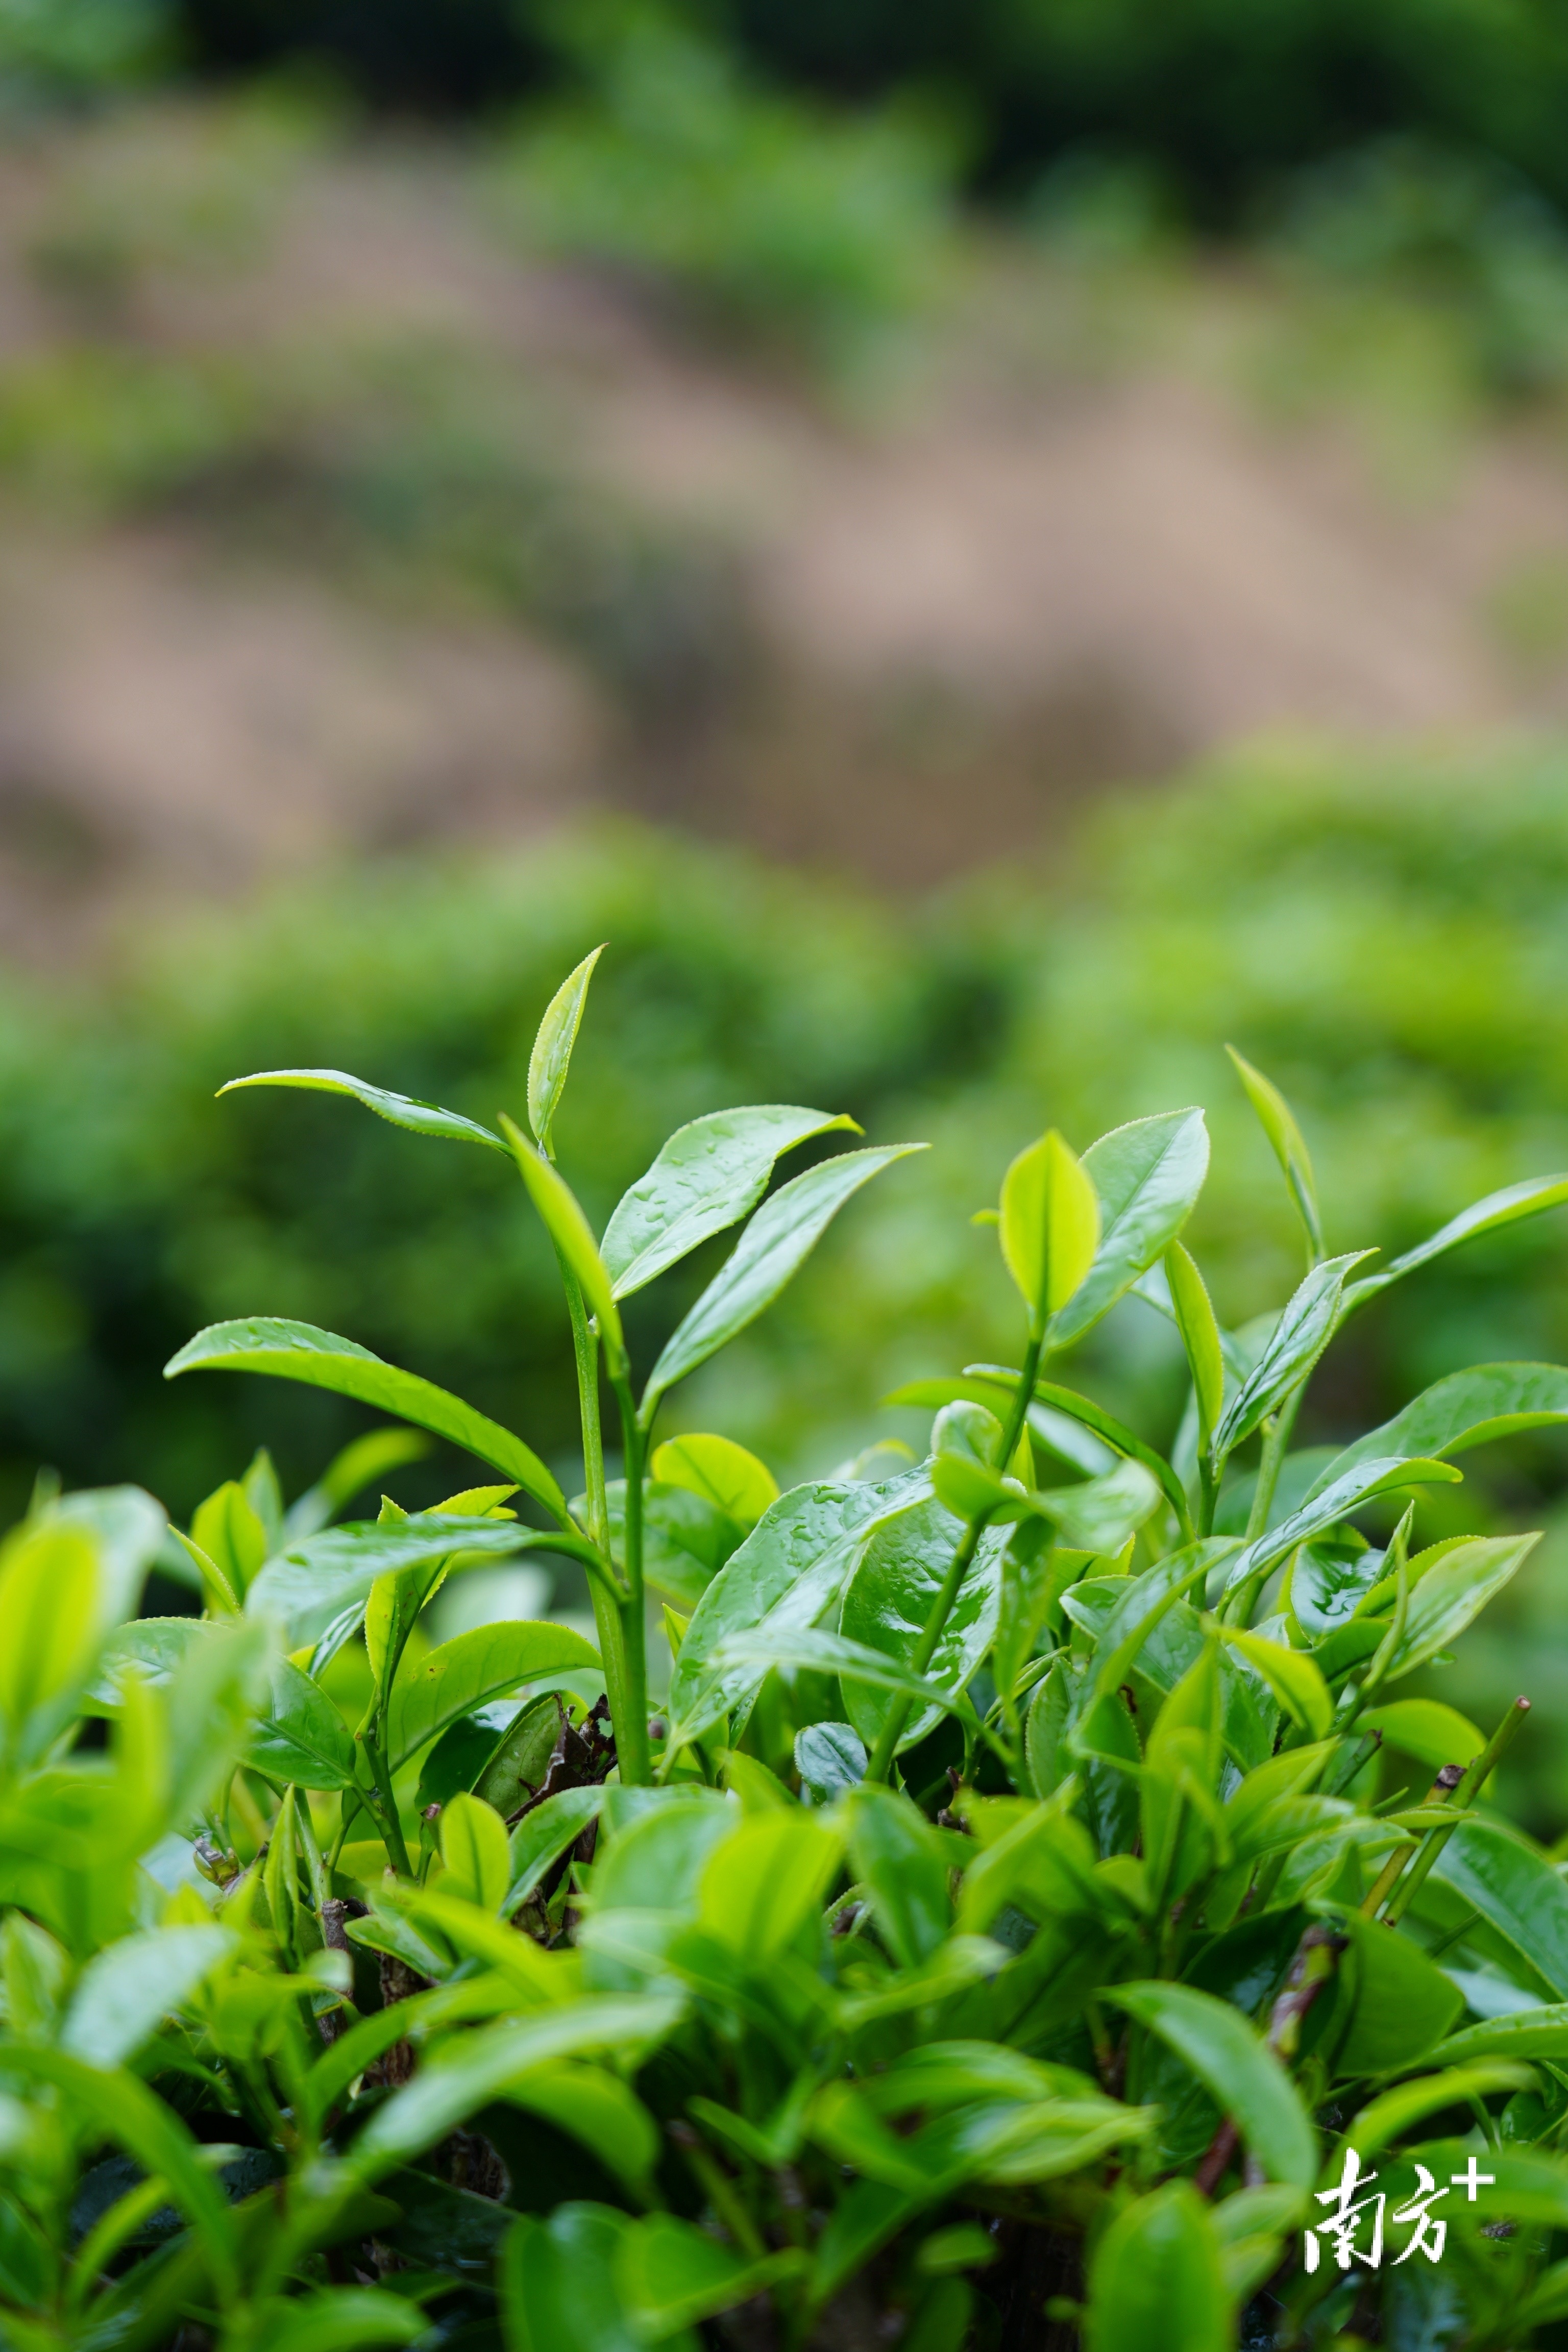 青绿鲜嫩的茶芽。 